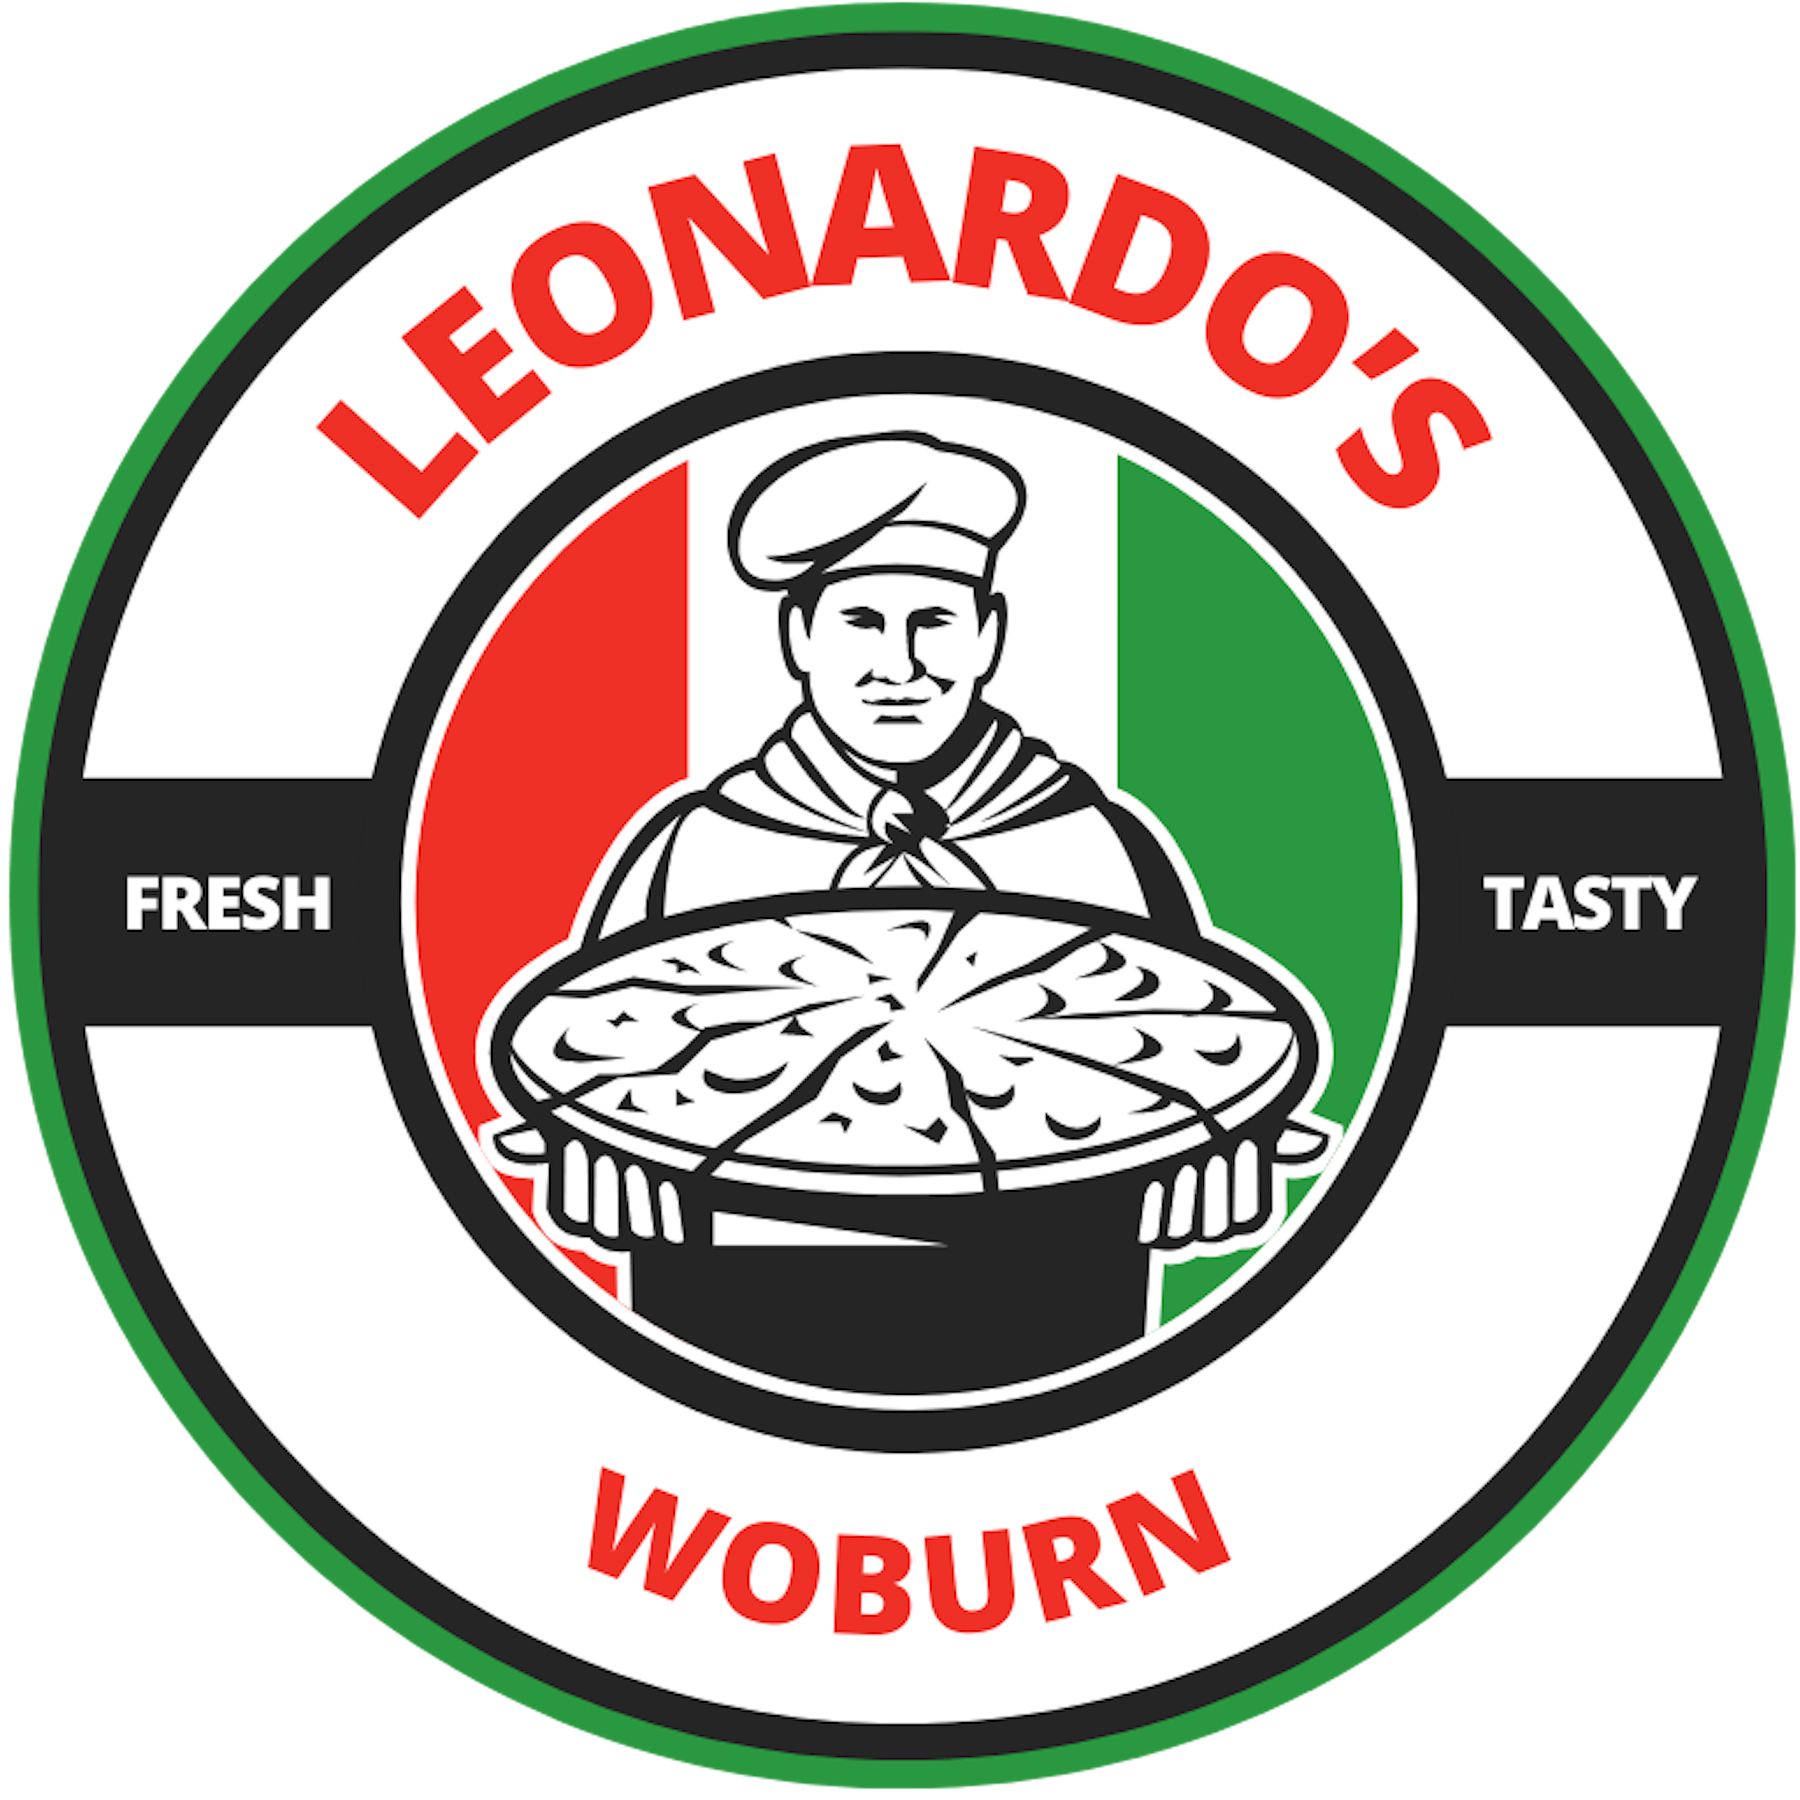 Online Ordering | Leonardo's - Italian Restaurant in Woburn, MA - Order ...